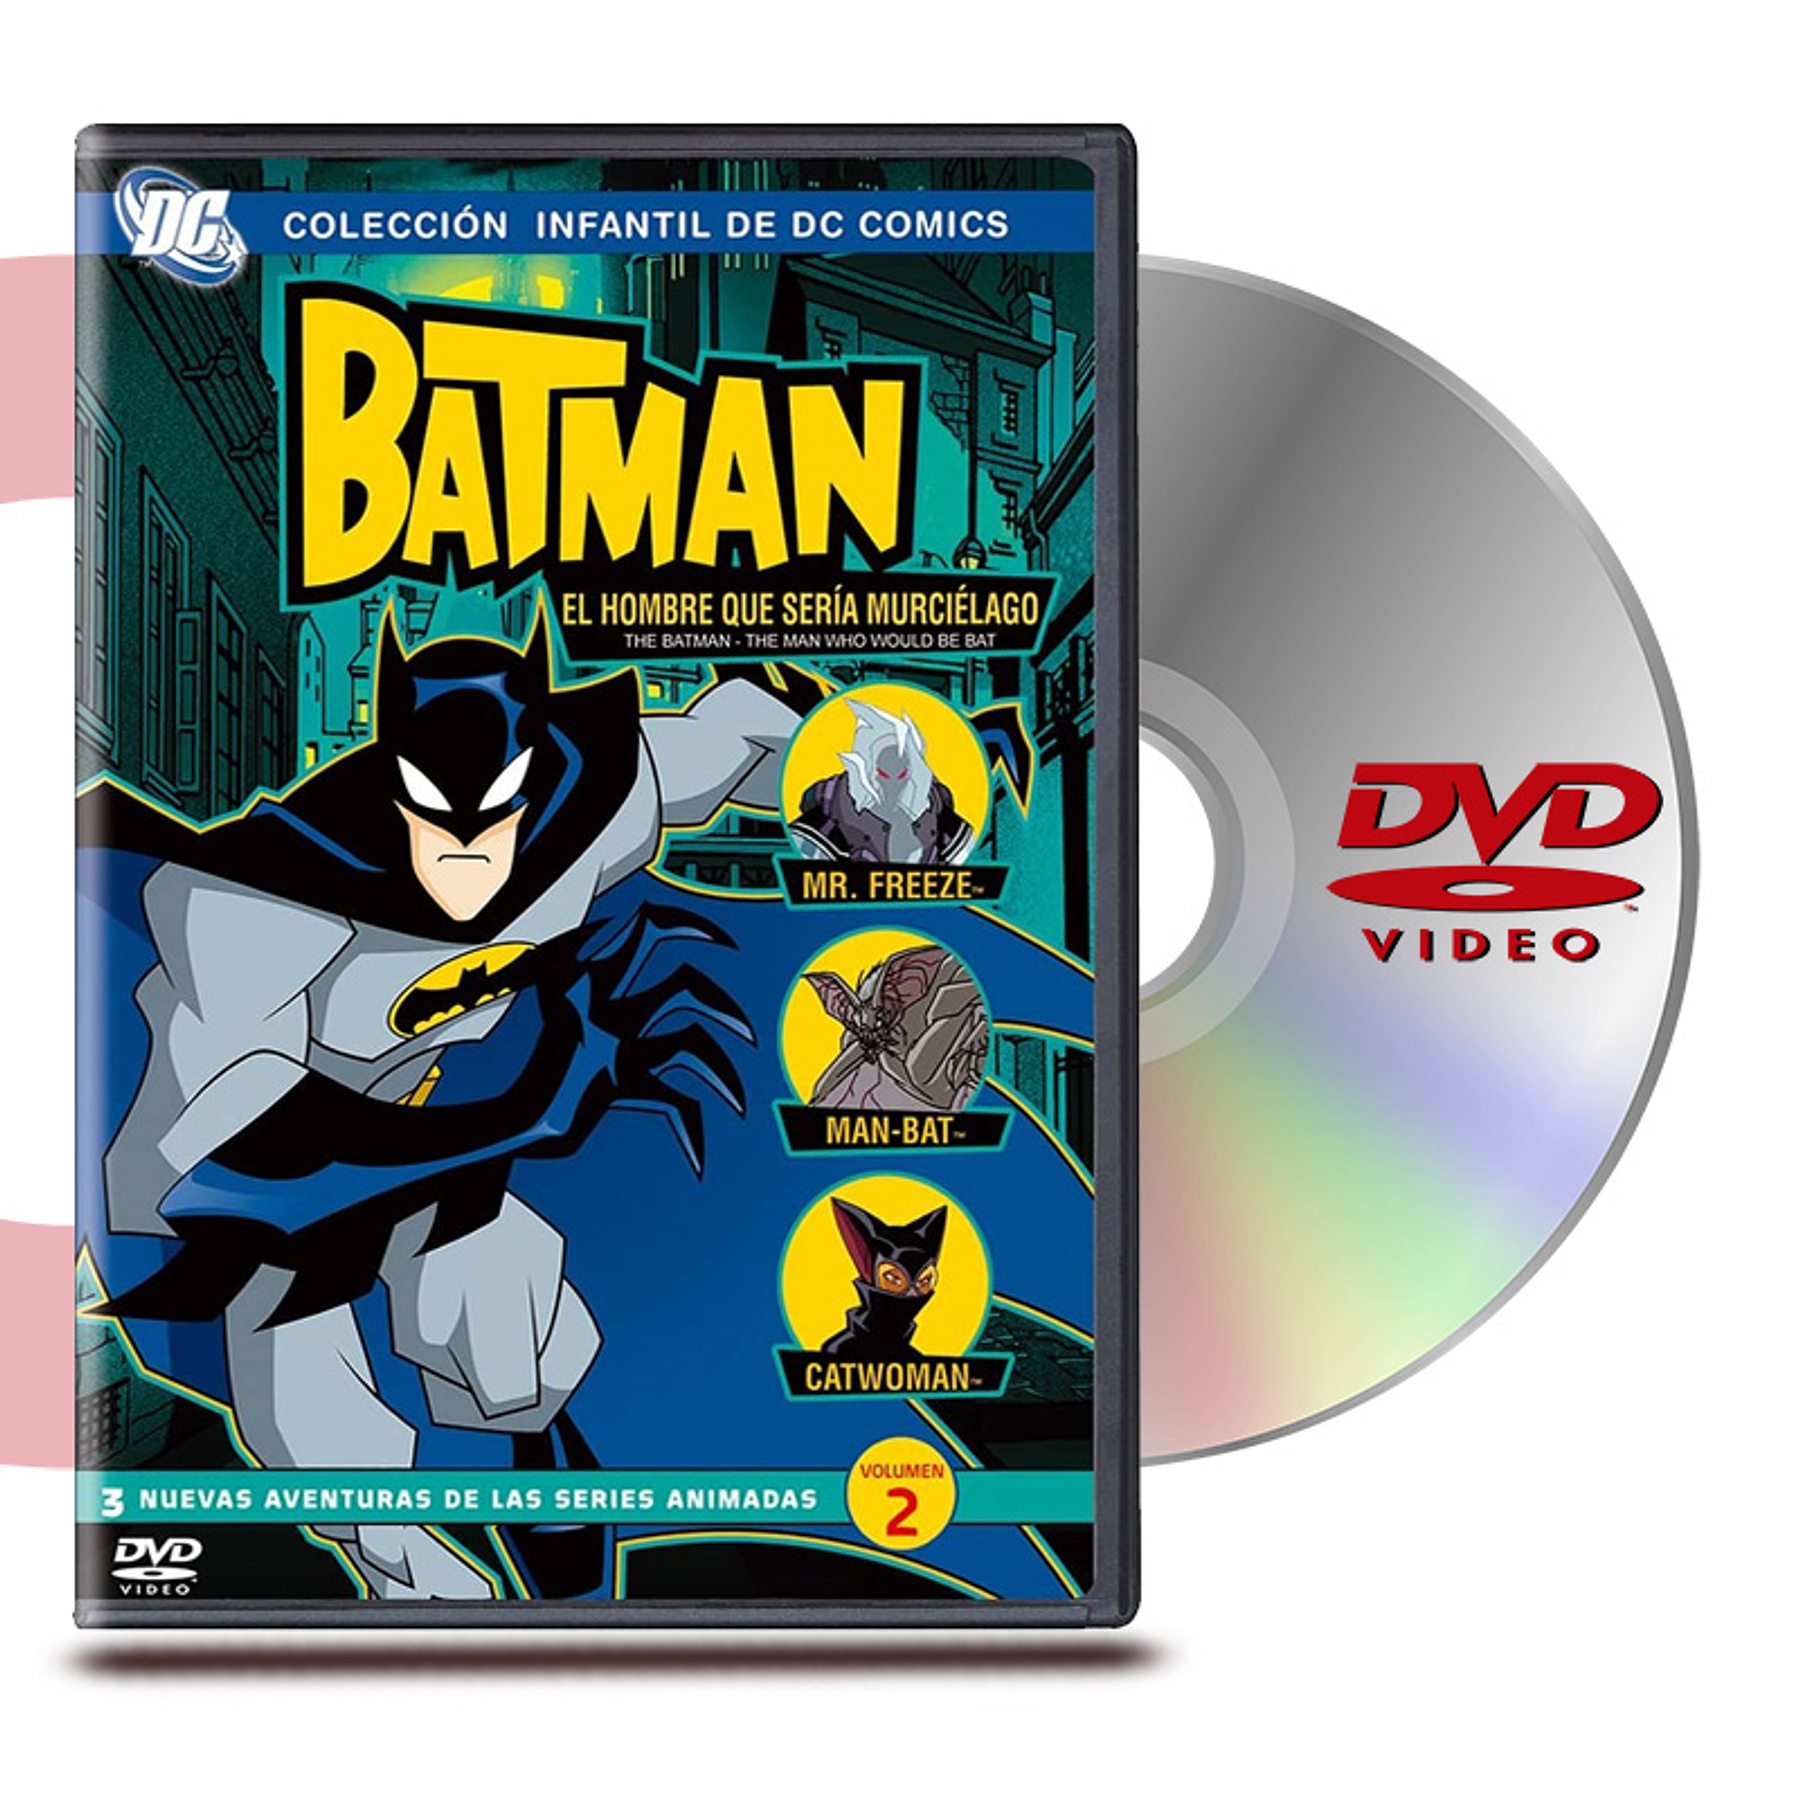 DVD BATMAN EL HOMBRE QUE SERIA MURCIELAGO